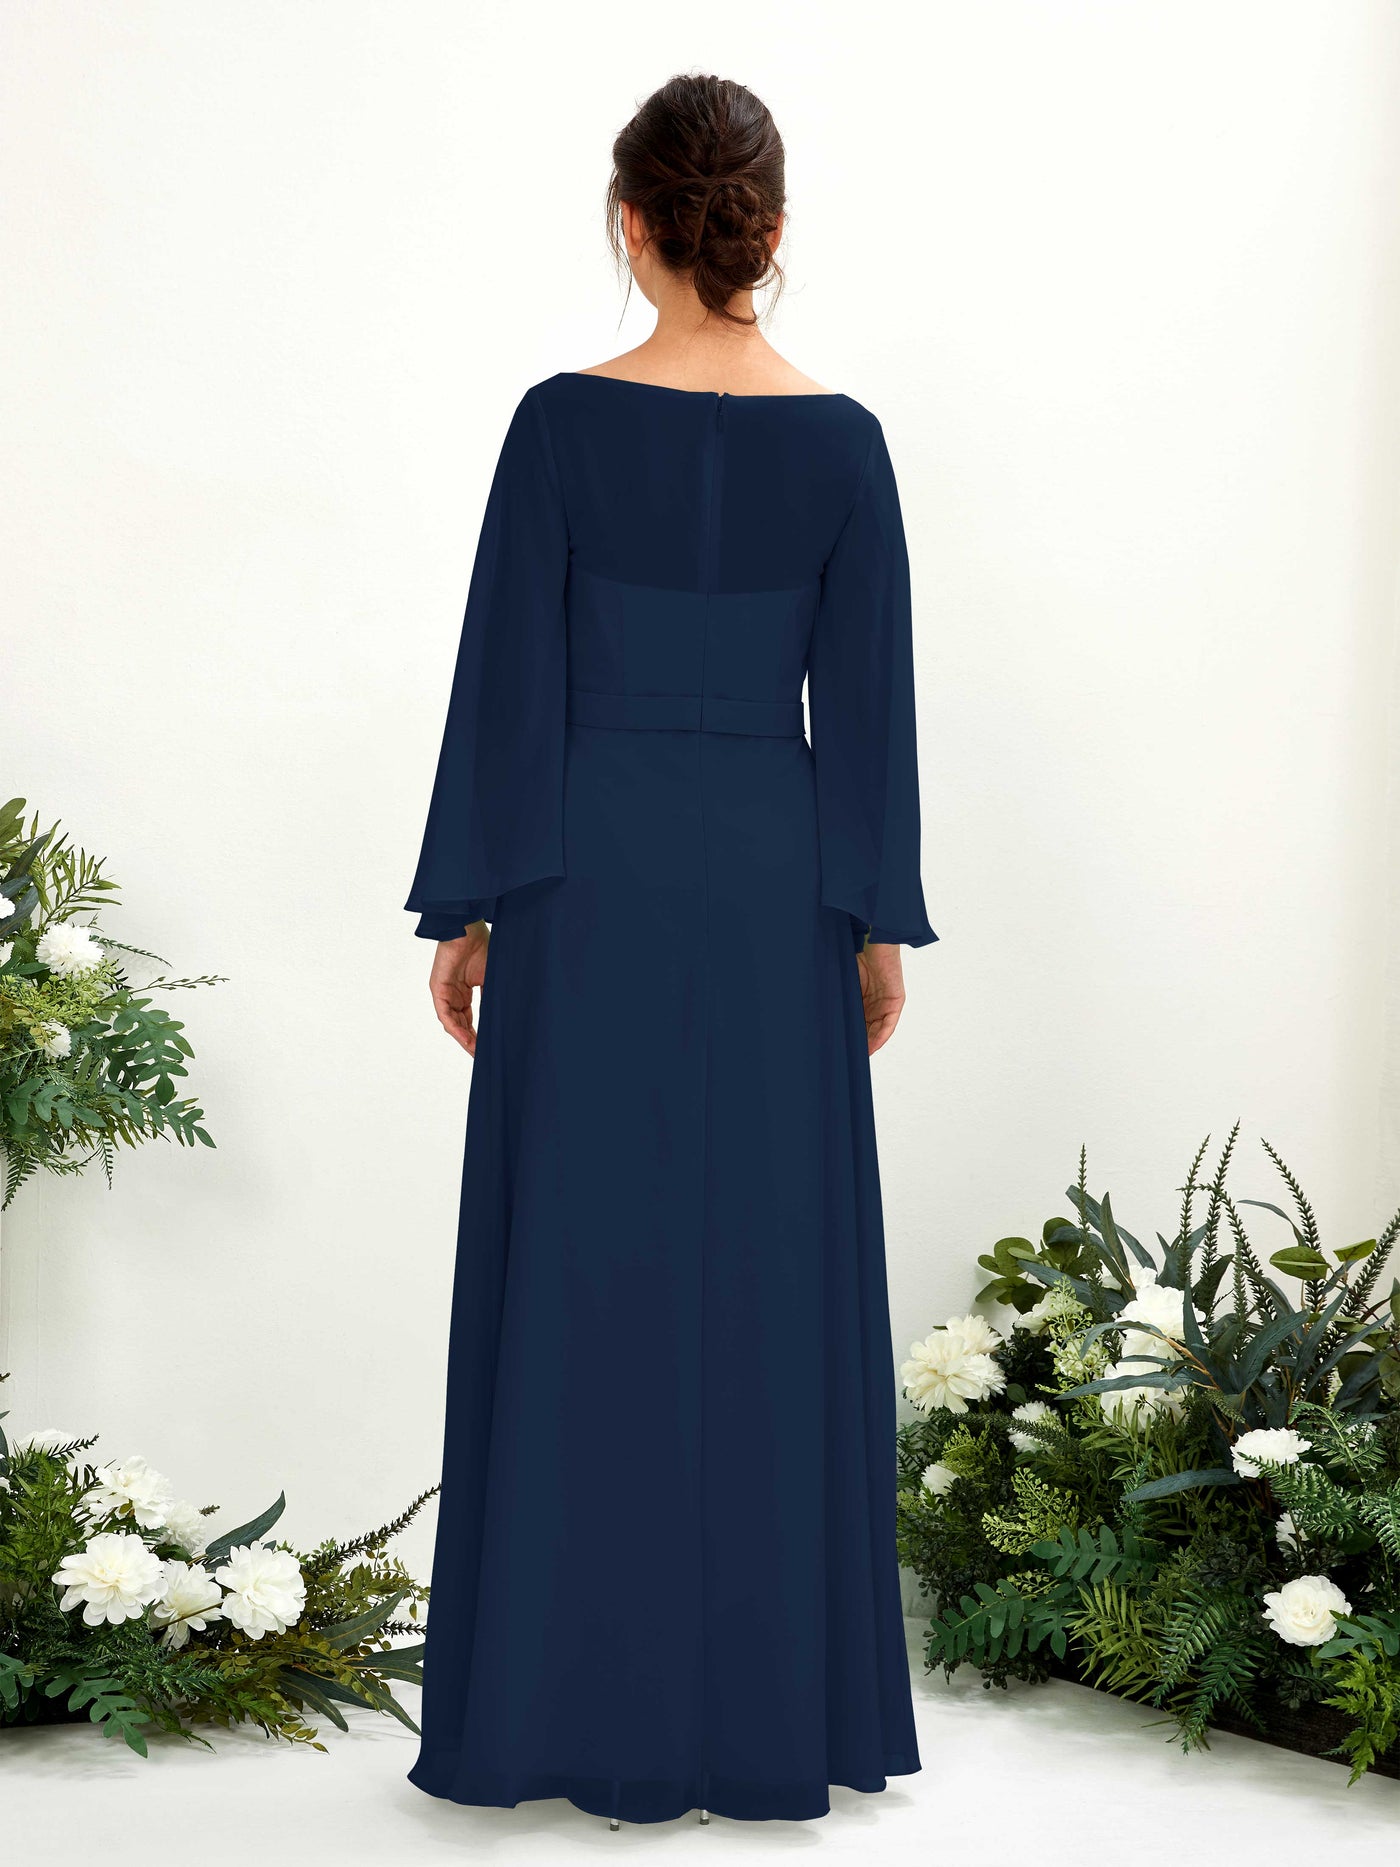 Bateau Illusion Long Sleeves Chiffon Bridesmaid Dress  (81220513)#color_navy